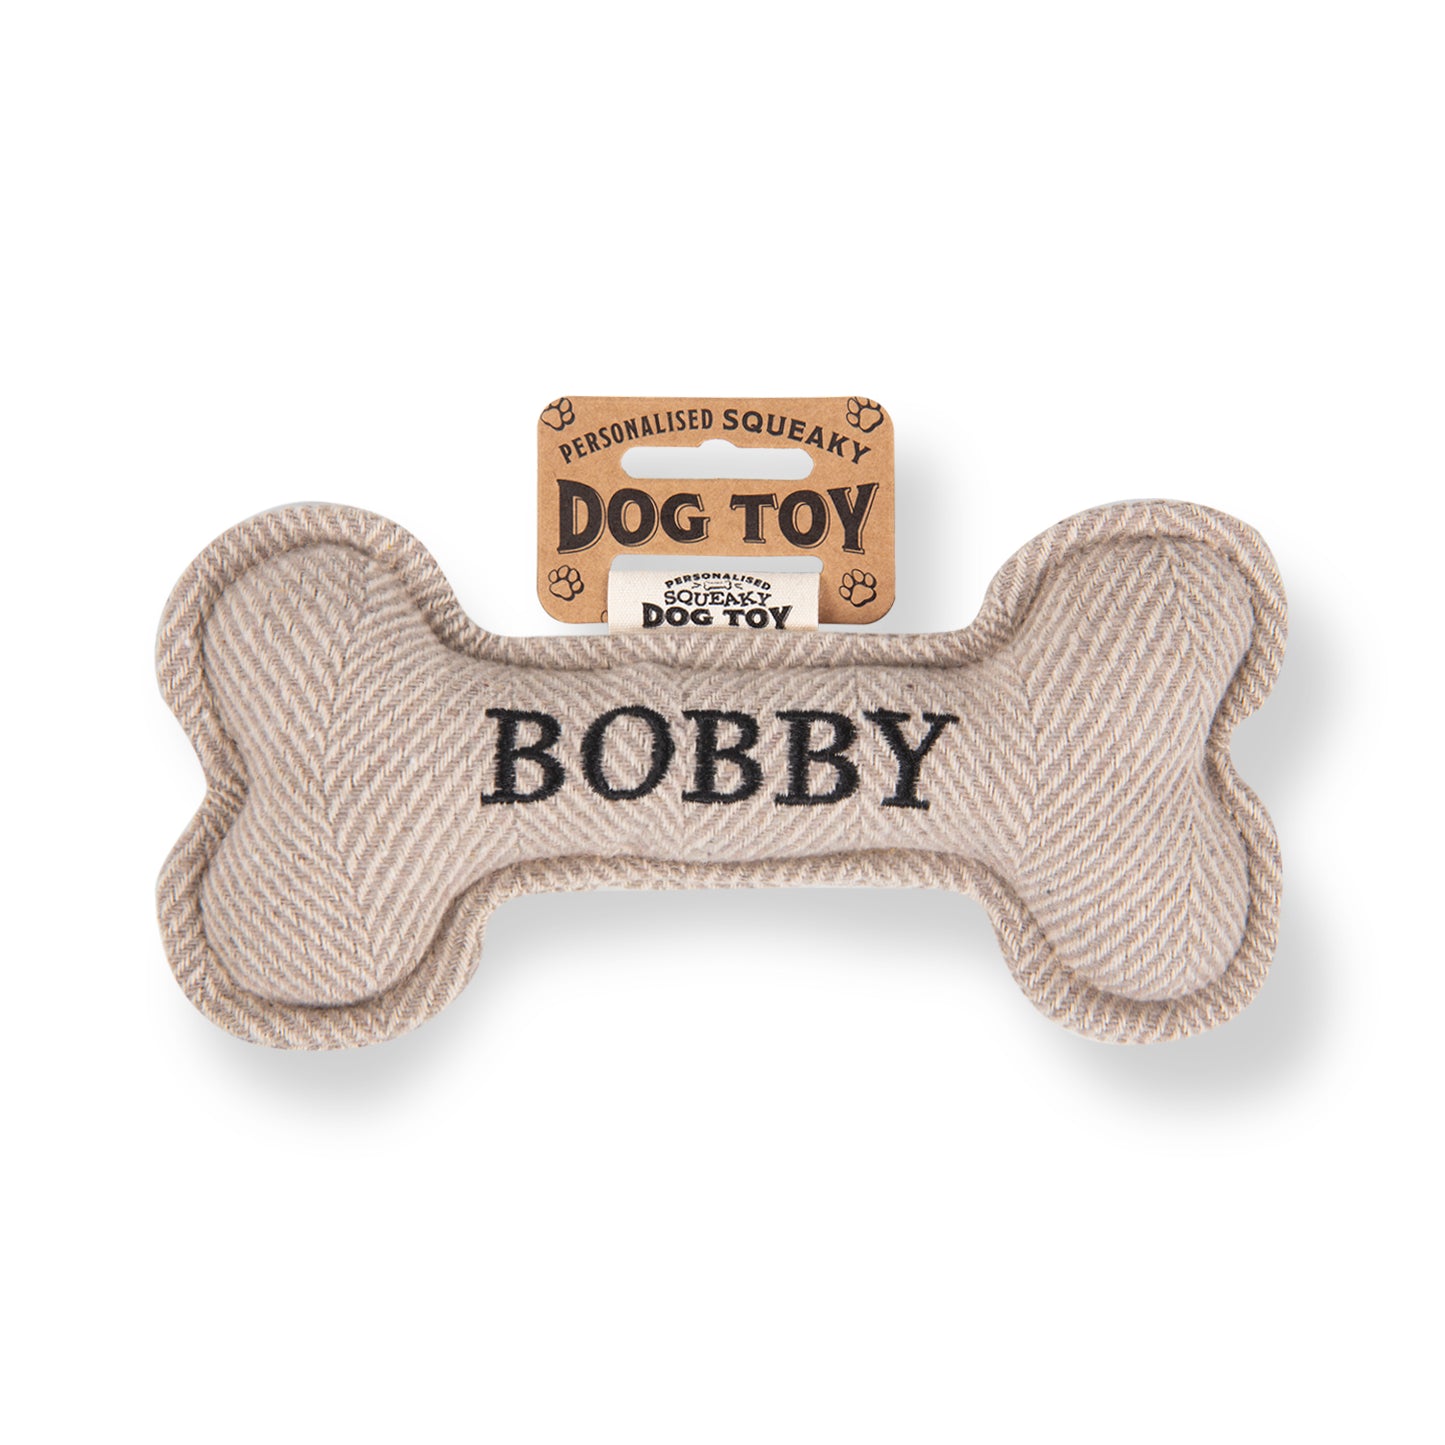 Squeaky Bone Dog Toy - Bobby